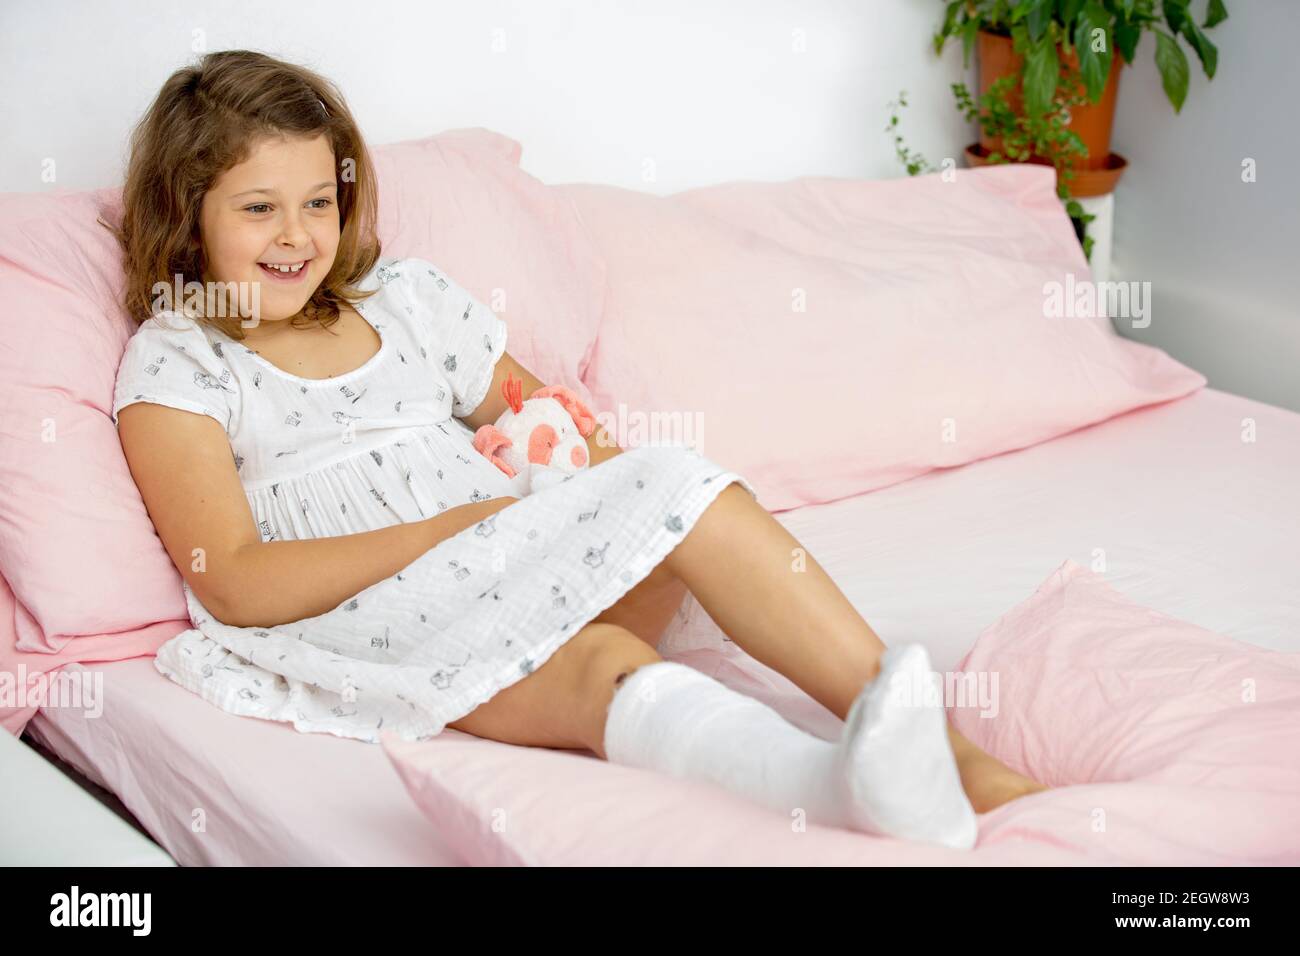 Une jeune fille joyeuse se trouve sur le lit dans un casting sur sa jambe, avec une cheville cassée. Jambe cassée chez un enfant. Banque D'Images